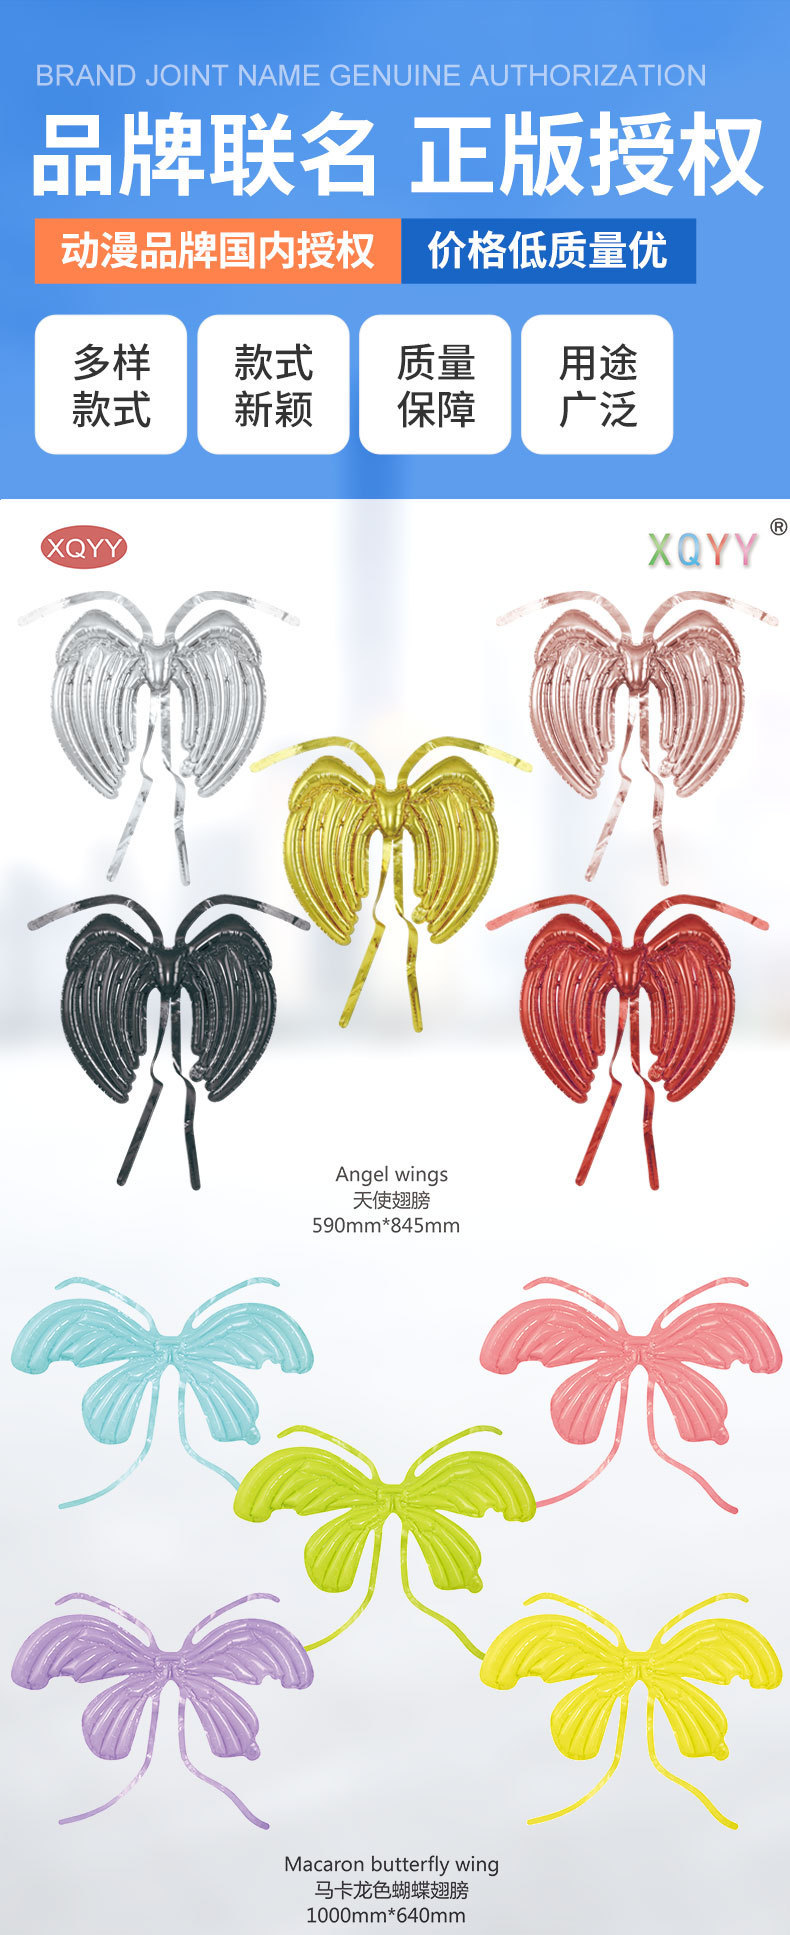 网红新款天使翅膀蝴蝶翅膀气球 儿童生日派对装饰铝膜拍照道具详情2